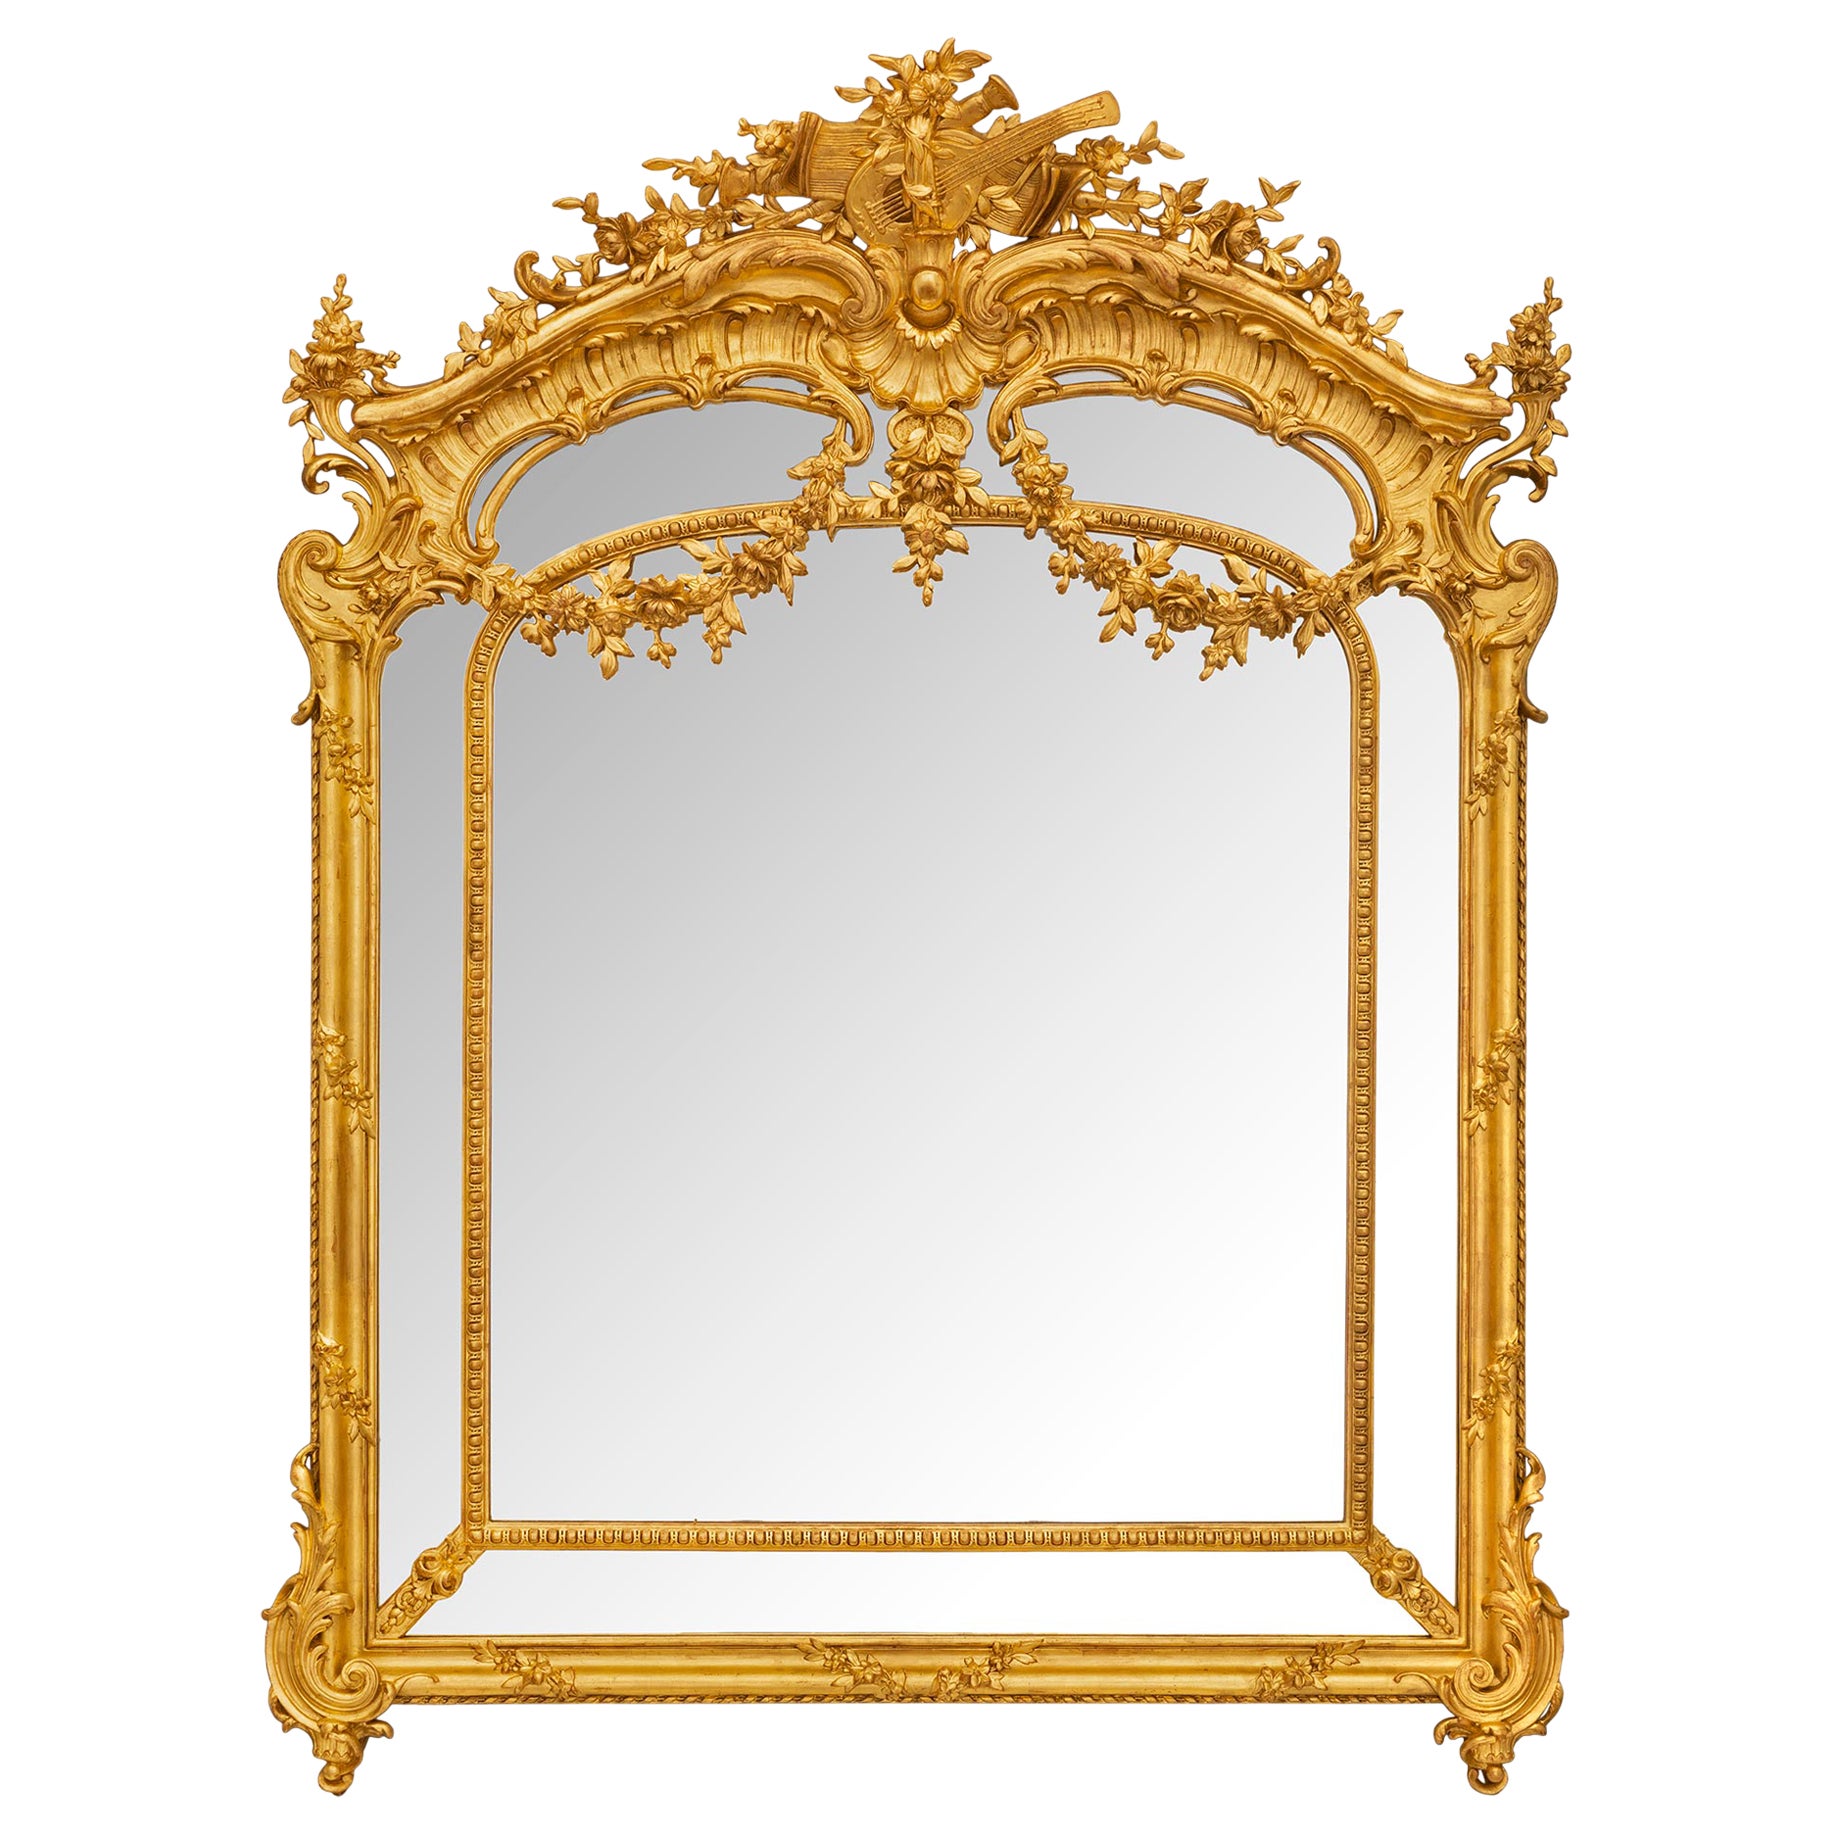 Miroir français du XIXe siècle, style Louis XVI, à double cadre en bois doré